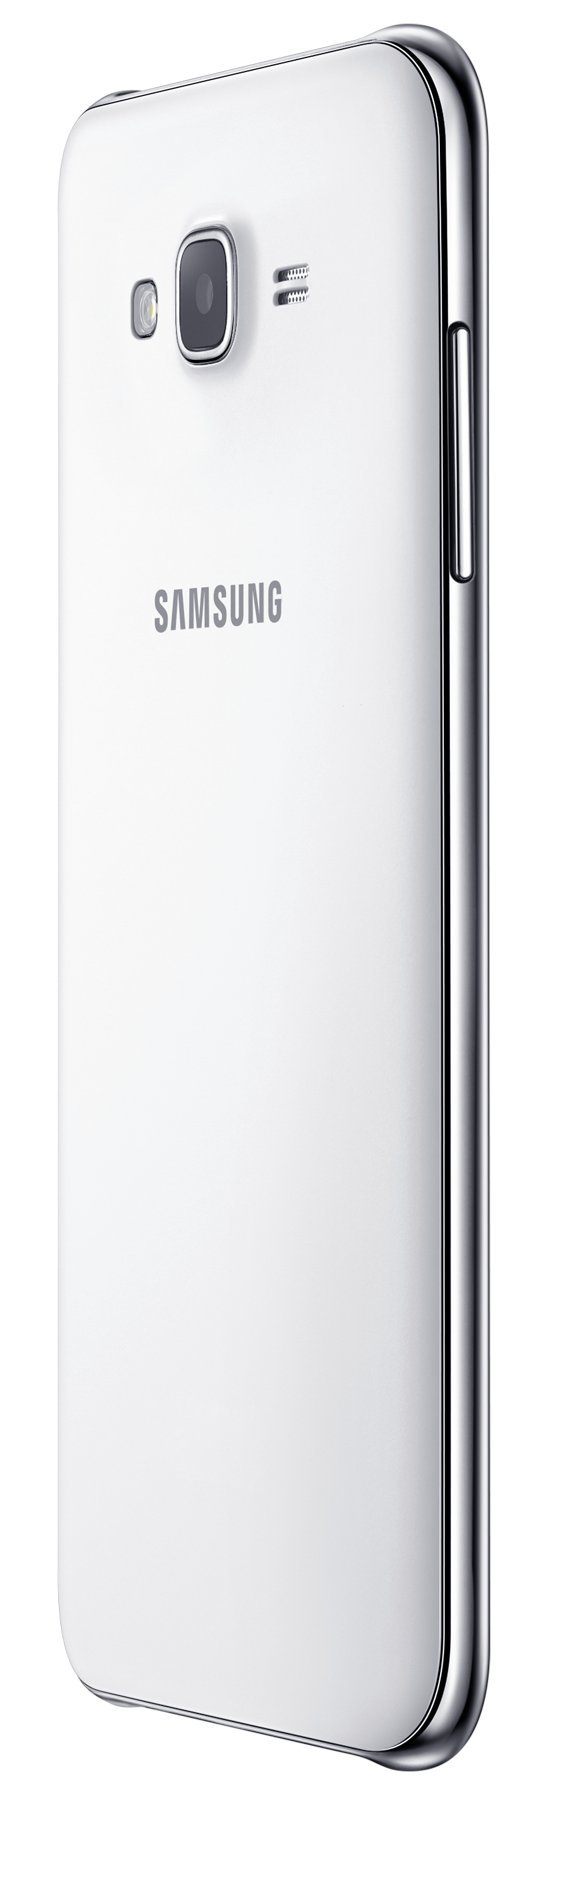 Samsung Galaxy J7 (16GB) J700F - 5.5